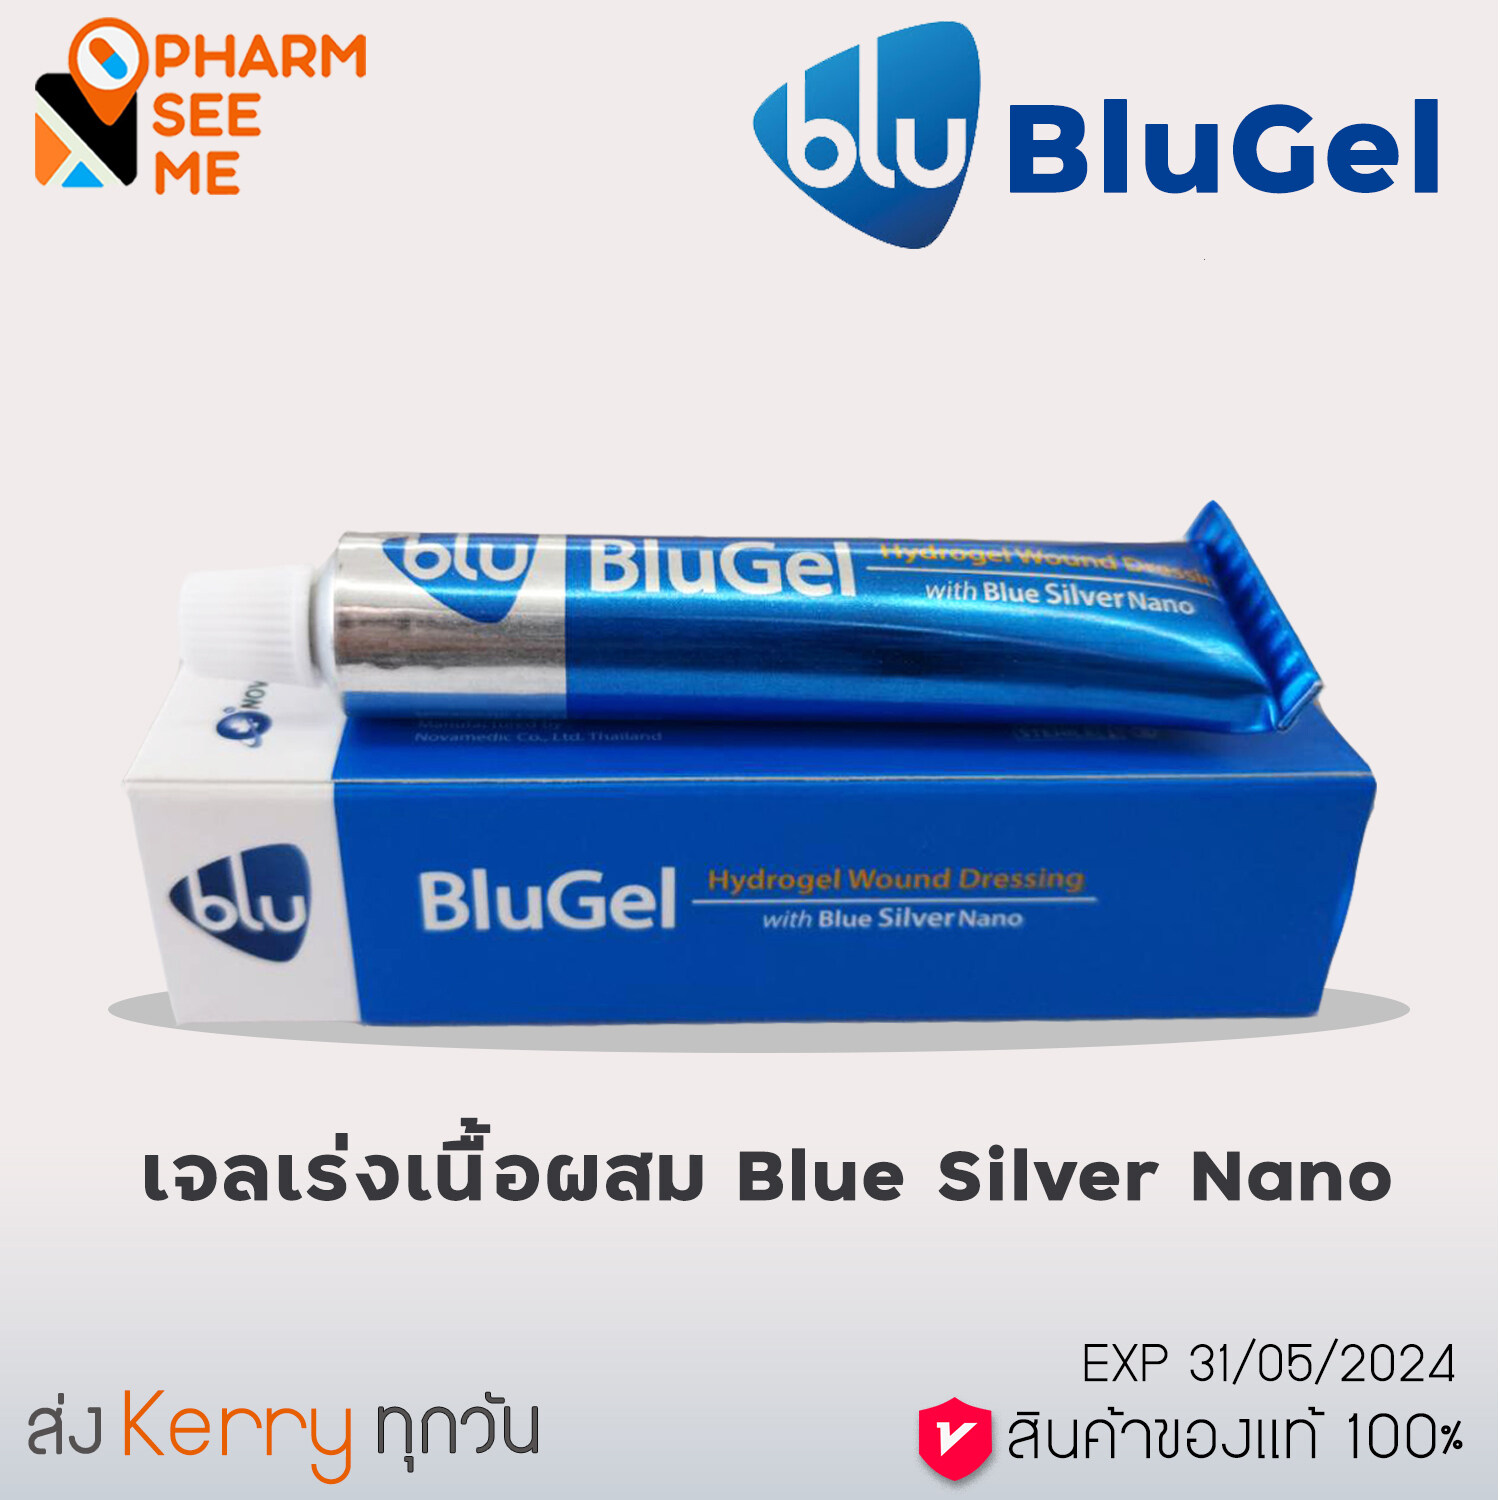 BluGel 15 Gm เจลเร่งเนื้อ สำหรับแผลสดและเรื้อรัง ผสม Blue silver nano จำนวน 1 หลอด